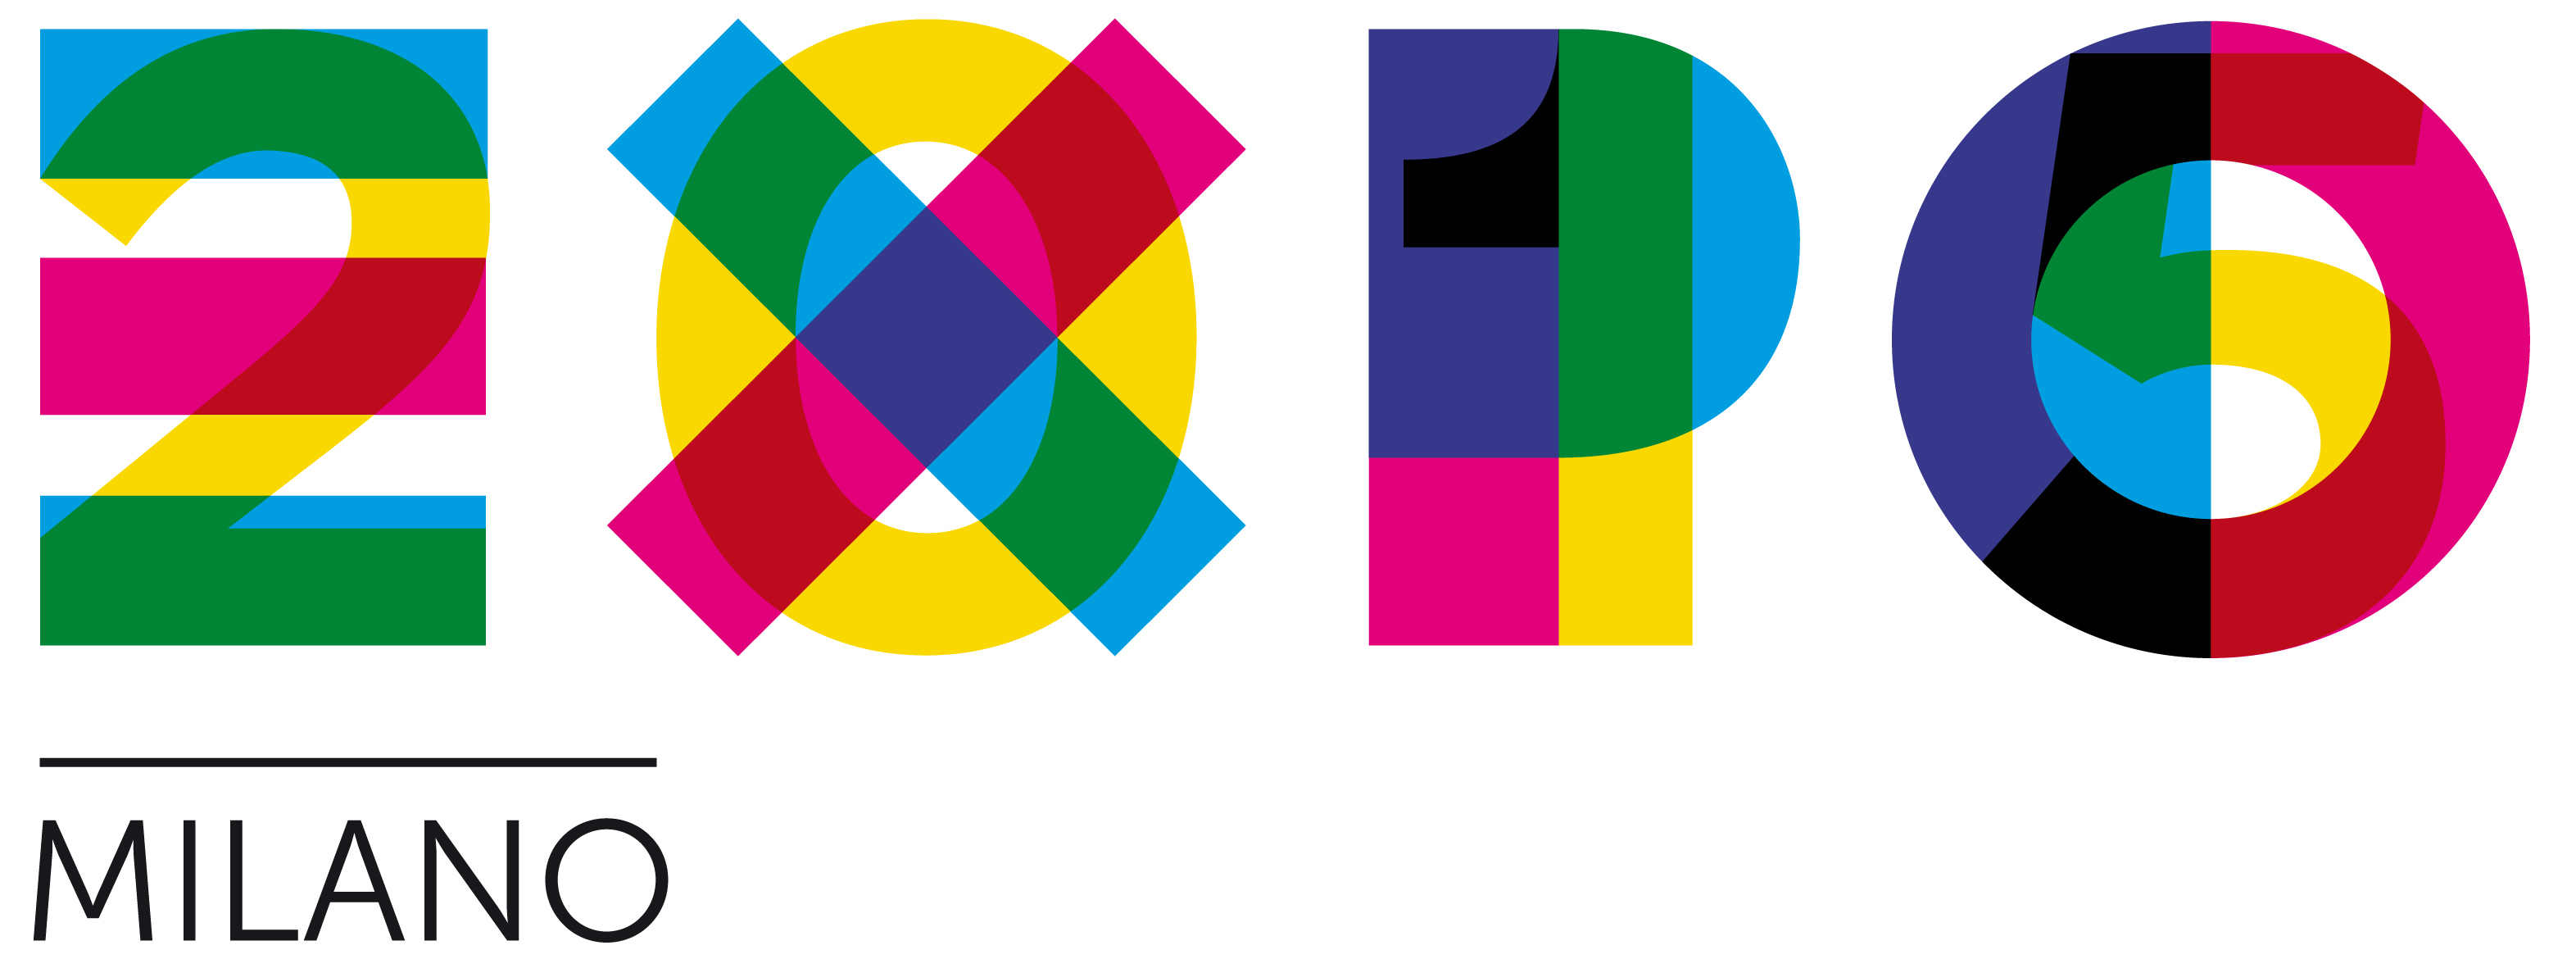 EXPO 2015 logo